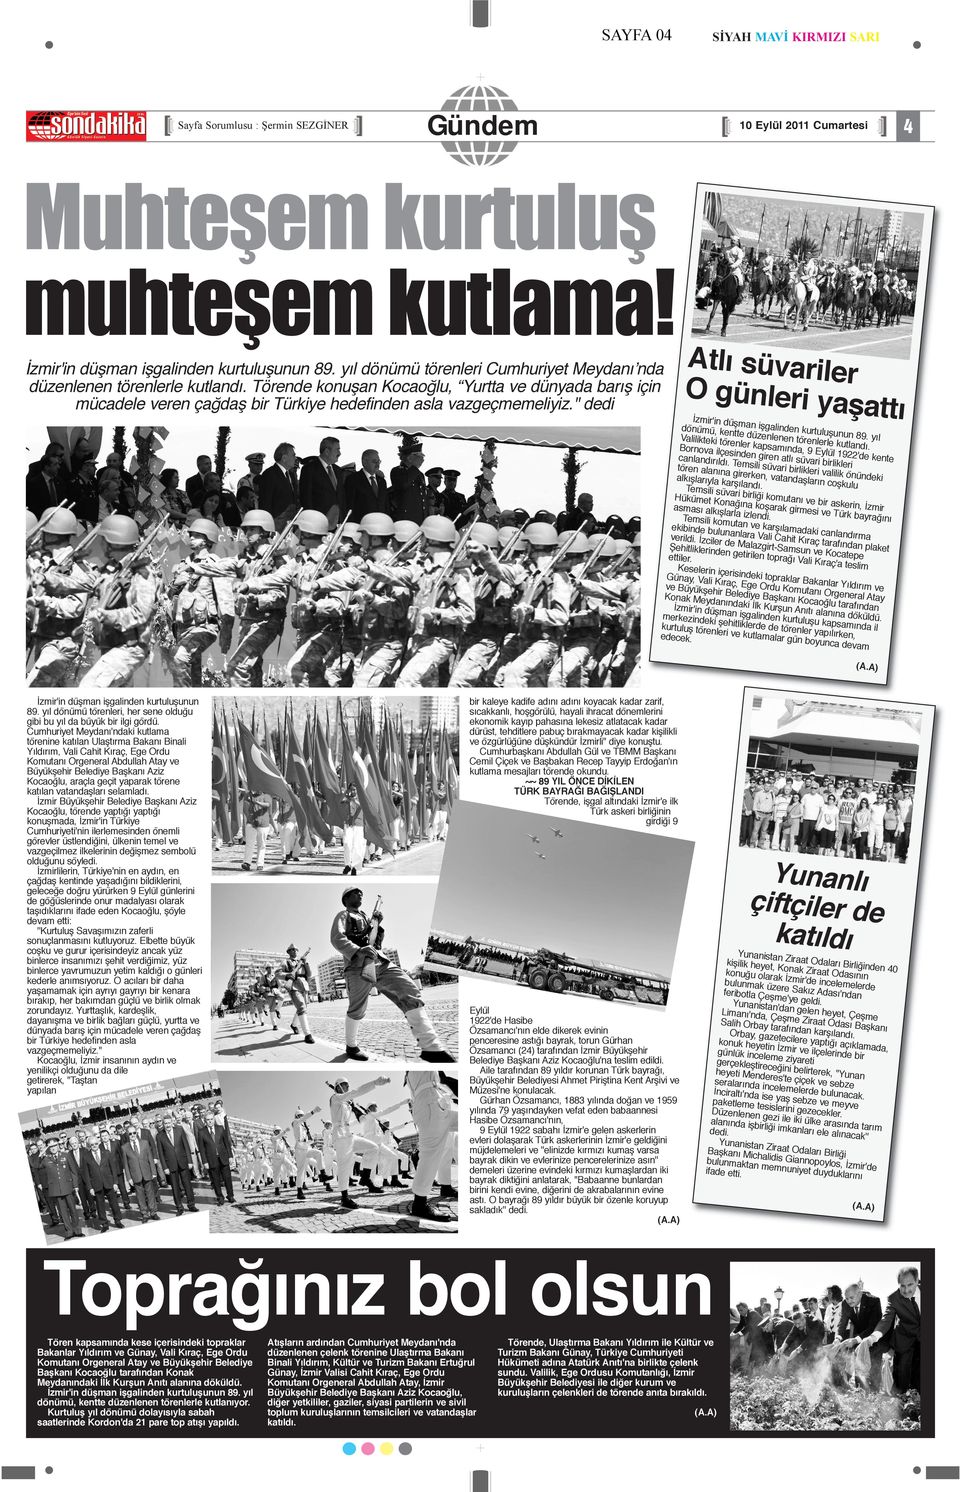 '' dedi Atlı süvariler O günleri yaşattı İzmir'in düşman işgalinden kurtuluşunun 89. yıl dönümü, kentte düzenlenen törenlerle kutlandı.